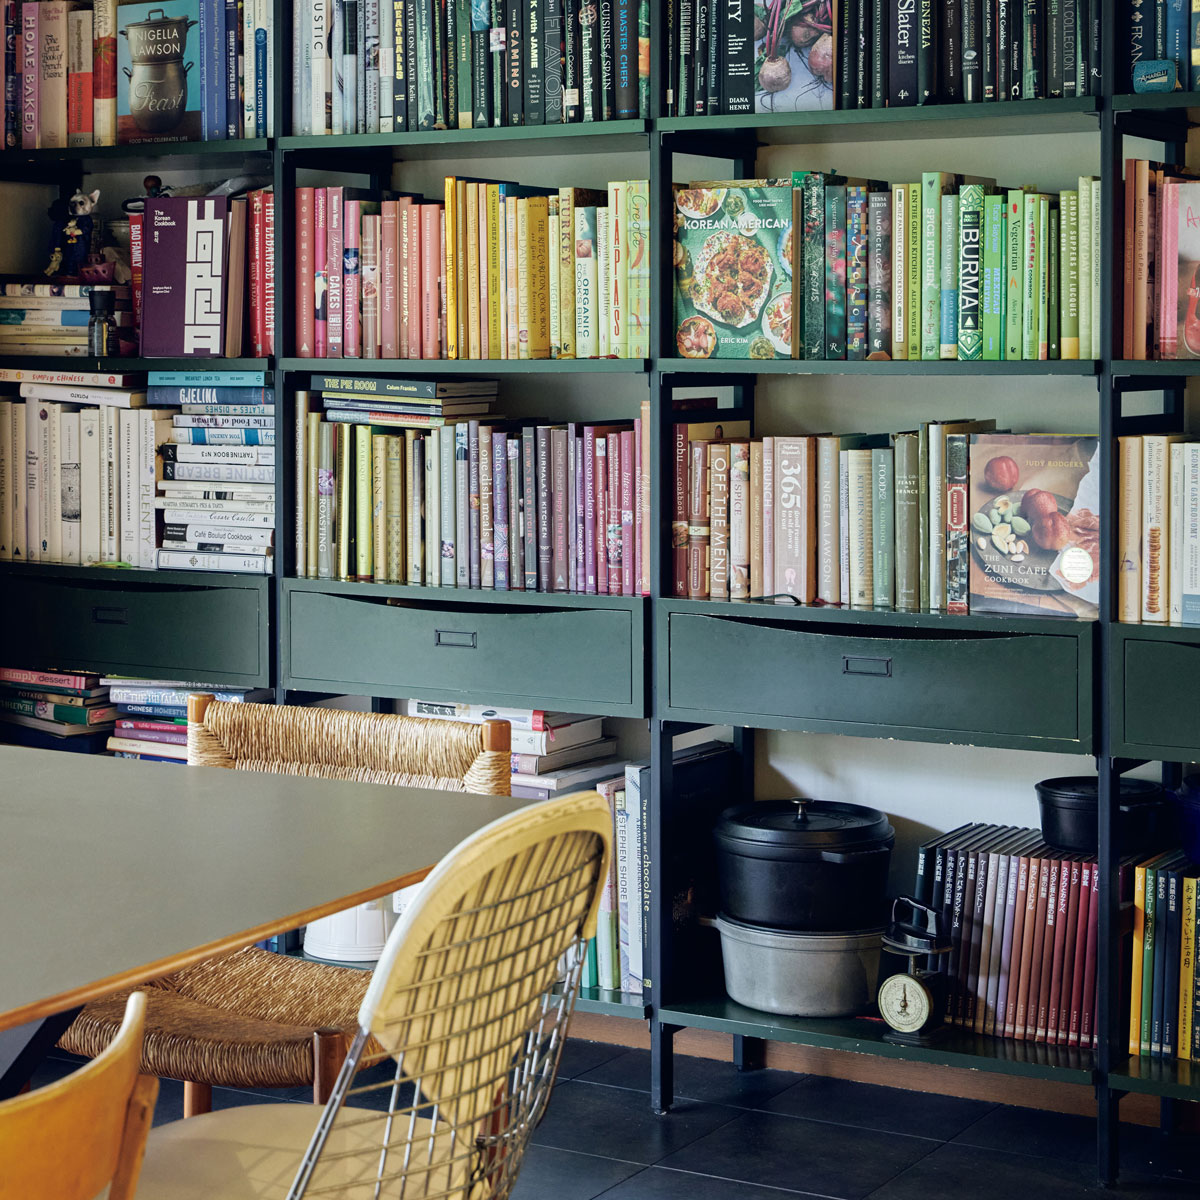 ダイニングには色別に料理本が並ぶ壁一面の本棚が。「前の家のサイズでオーダーした本棚がこの家にもぴったり。テーブルの天板も自分たちで張り替えたものです」